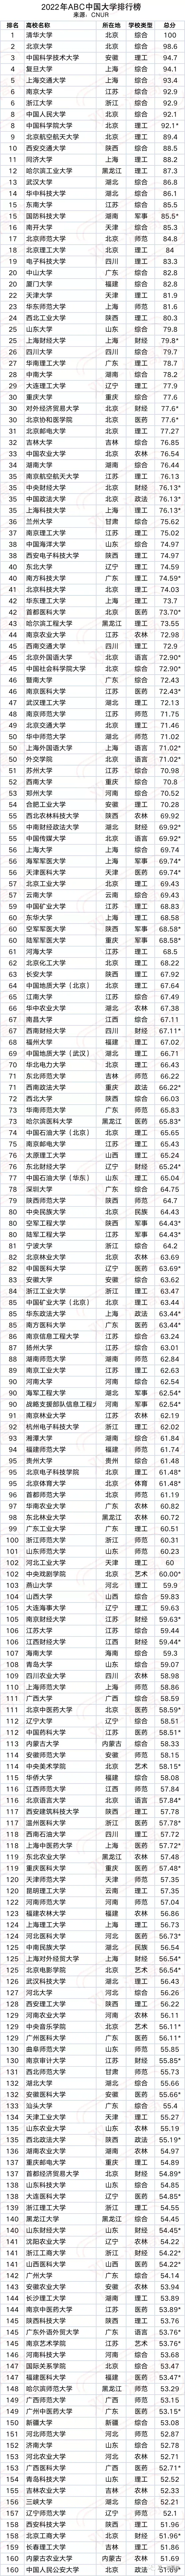 2022高考填报志愿参考（中国大学排行榜TOP600名单,985、211、一本）